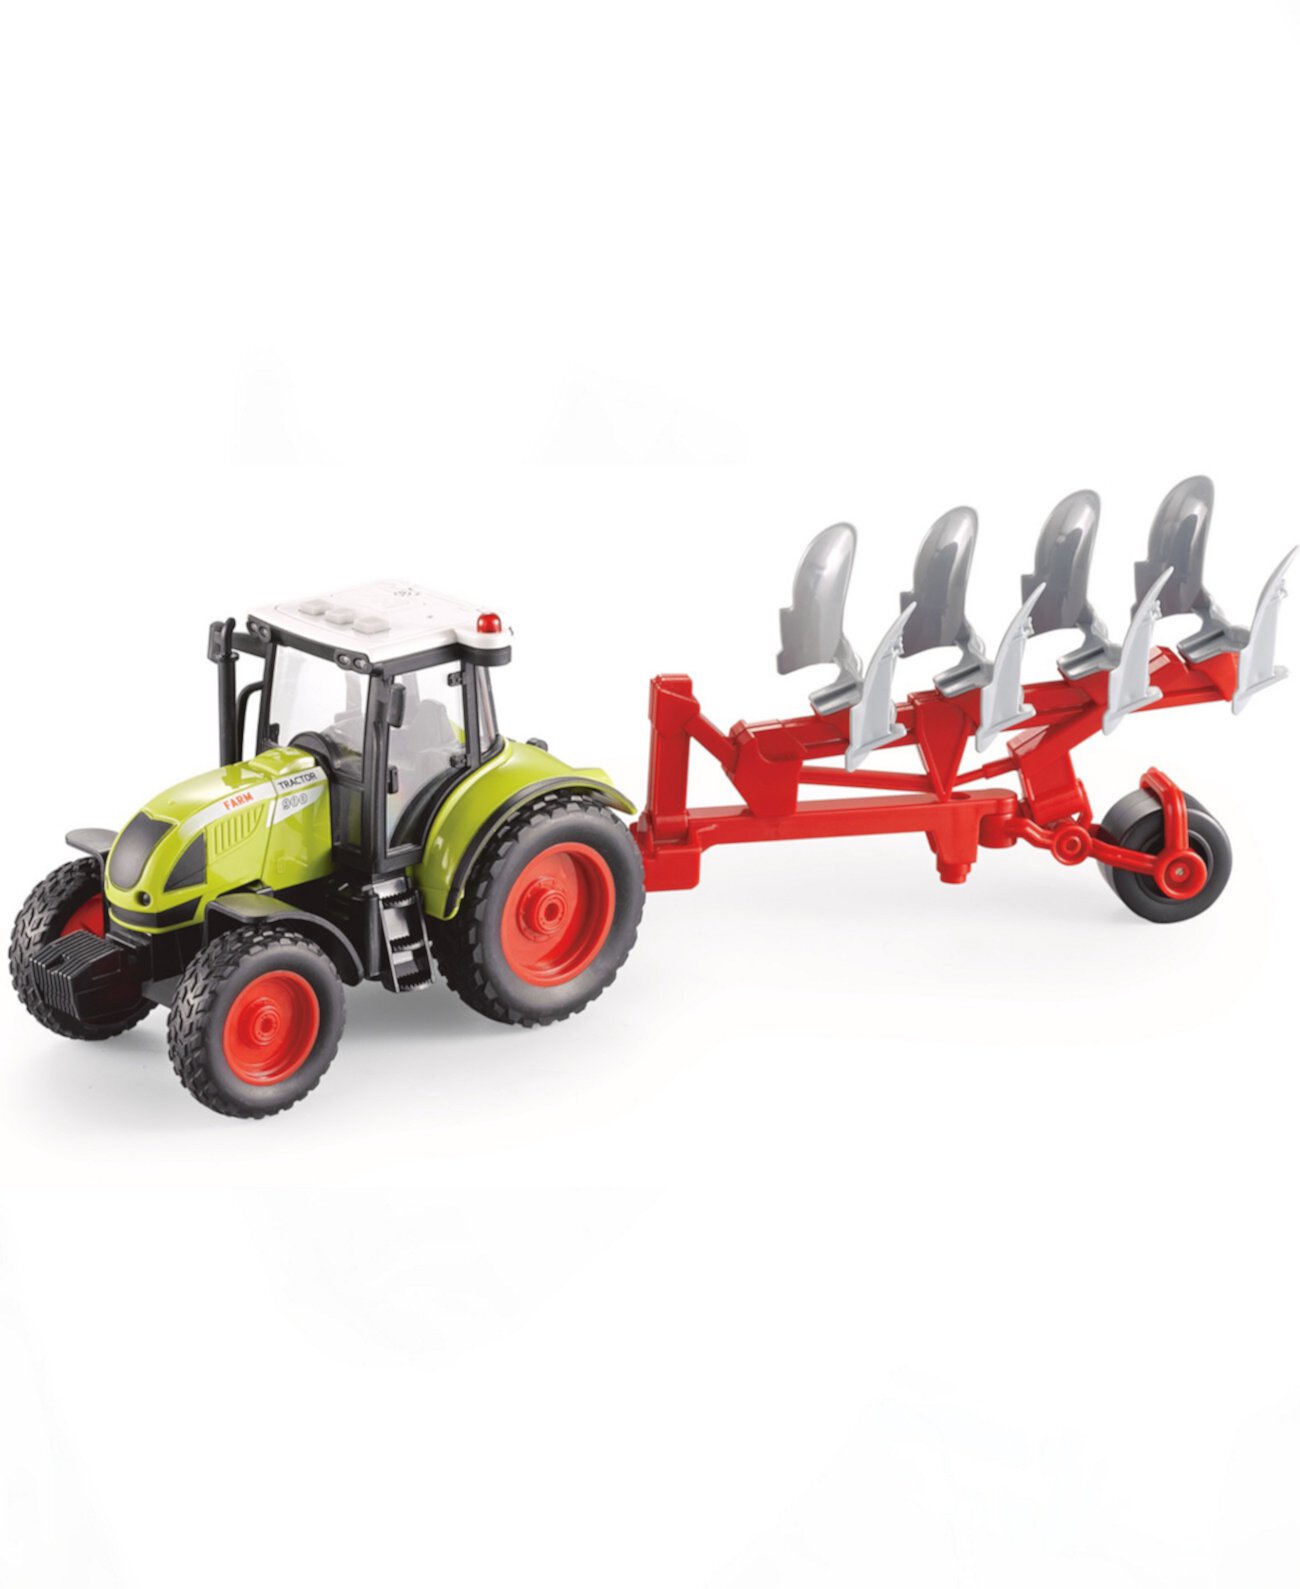 Сельскохозяйственный тракторный прицеп для внесения удобрений в почву Big Daddy